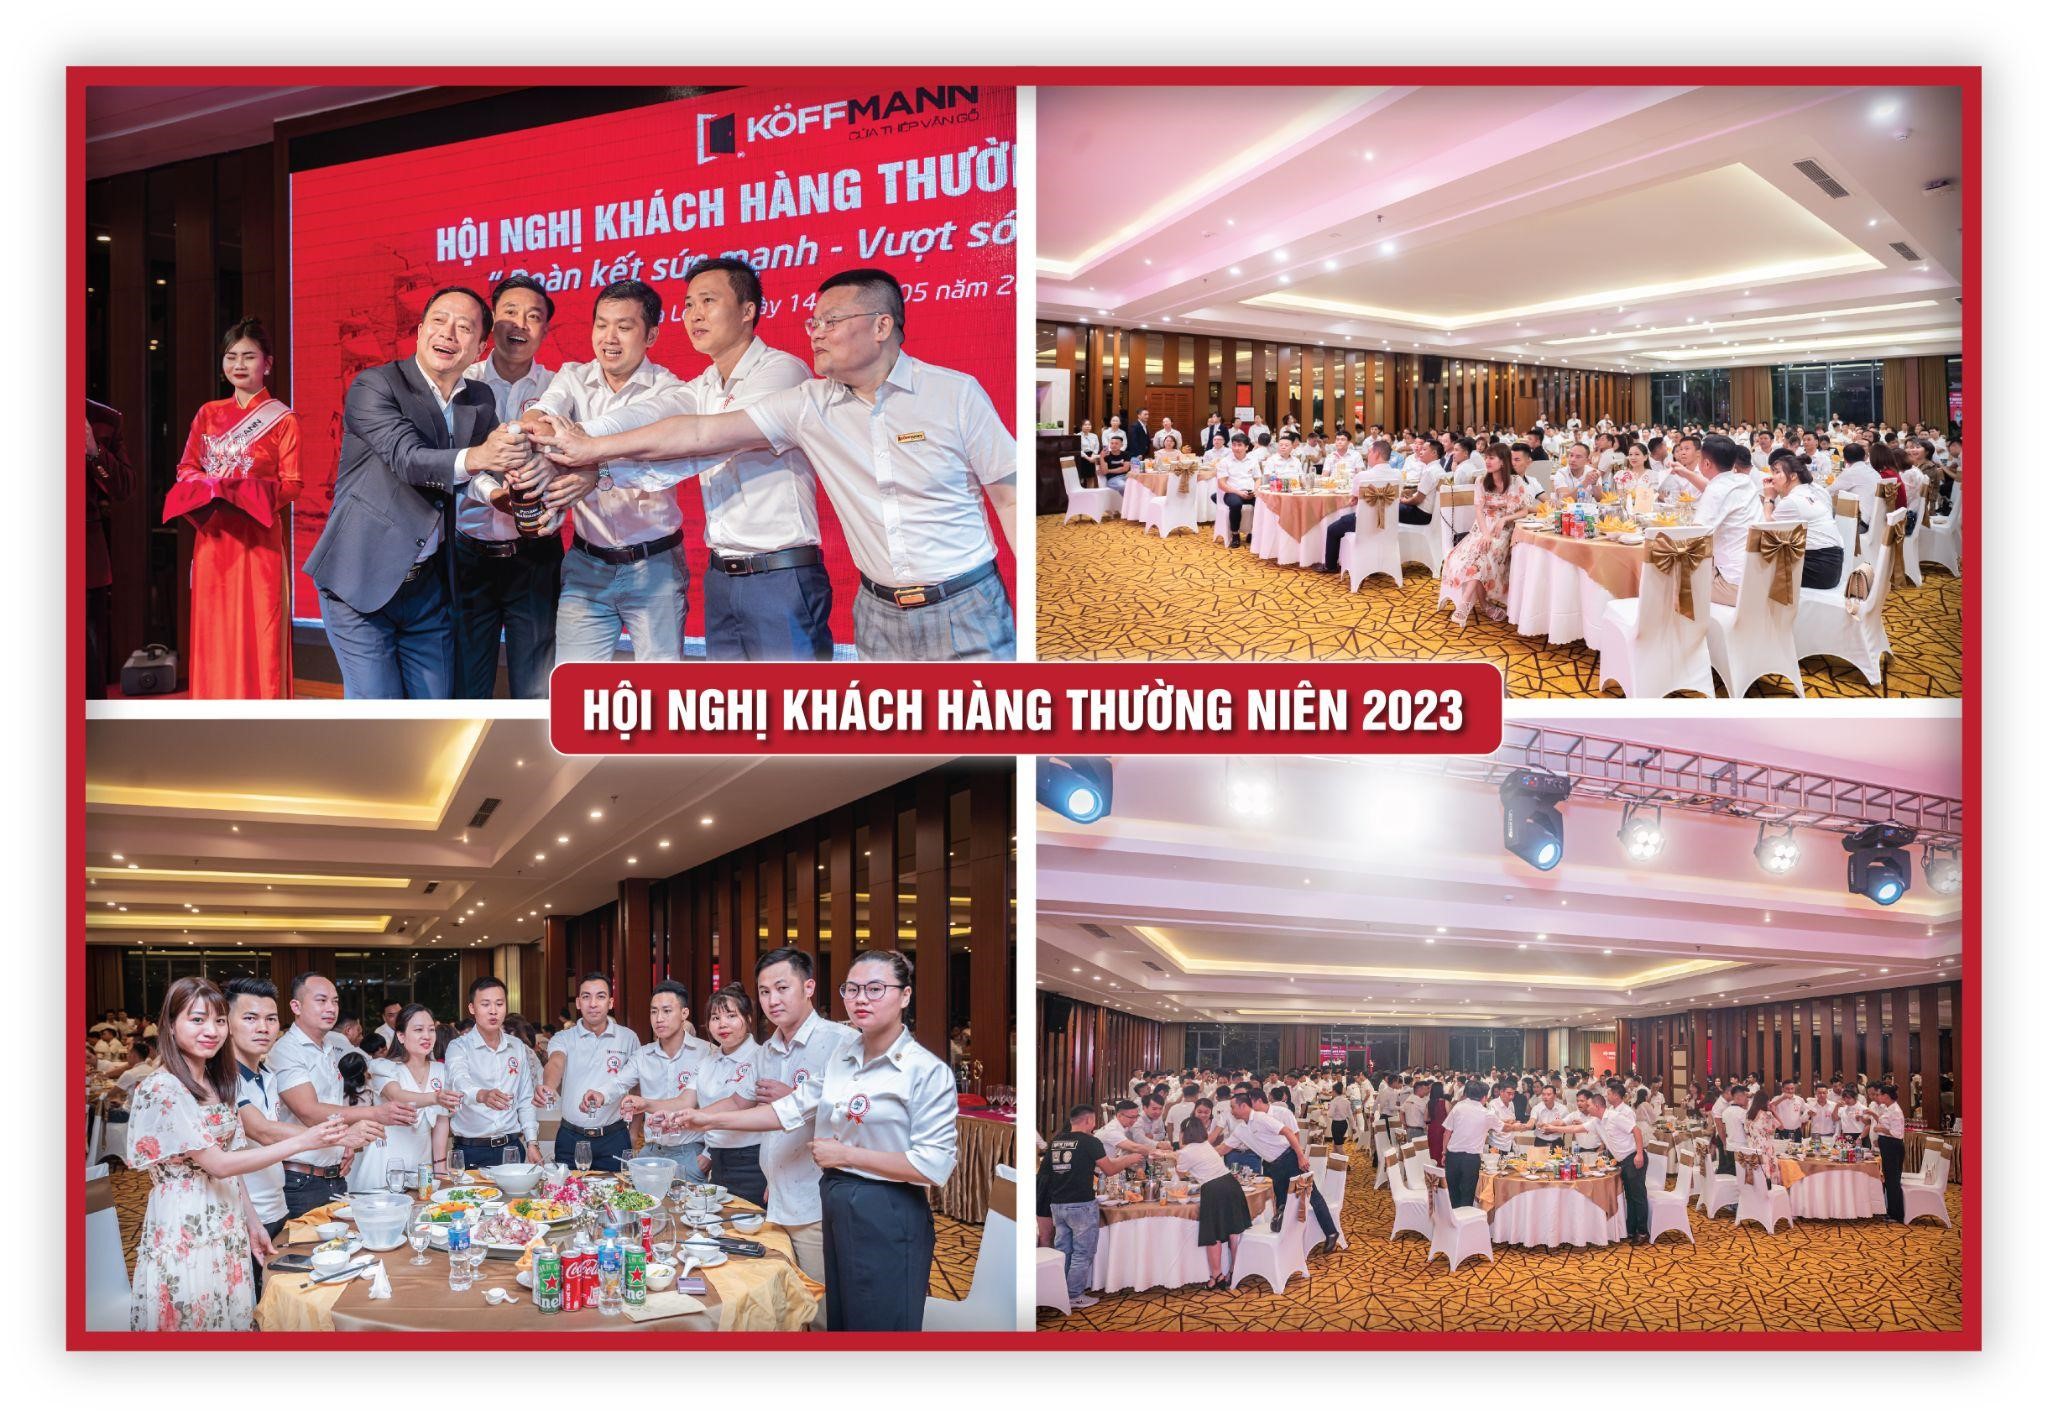 Koffmann Việt Nam tổ chức hội nghị khách hàng thường niên 2023 - 5